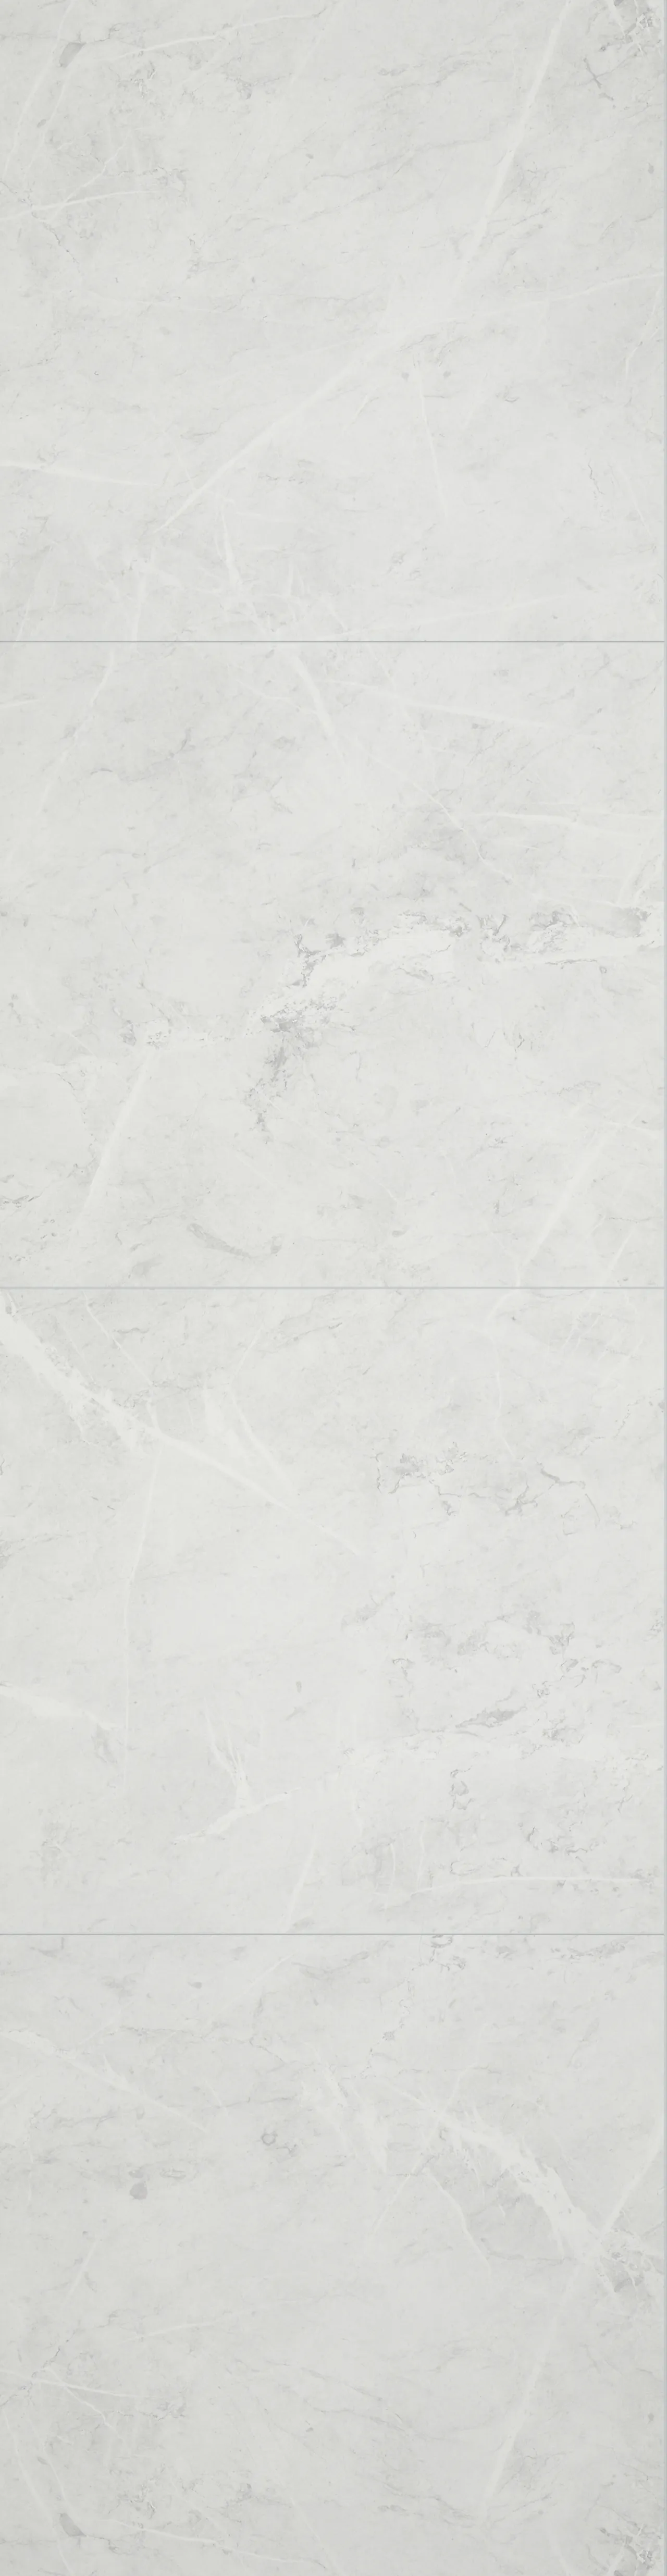 Baderomsplate hvit marmor flis 11x620x2400 mm null - null - 2